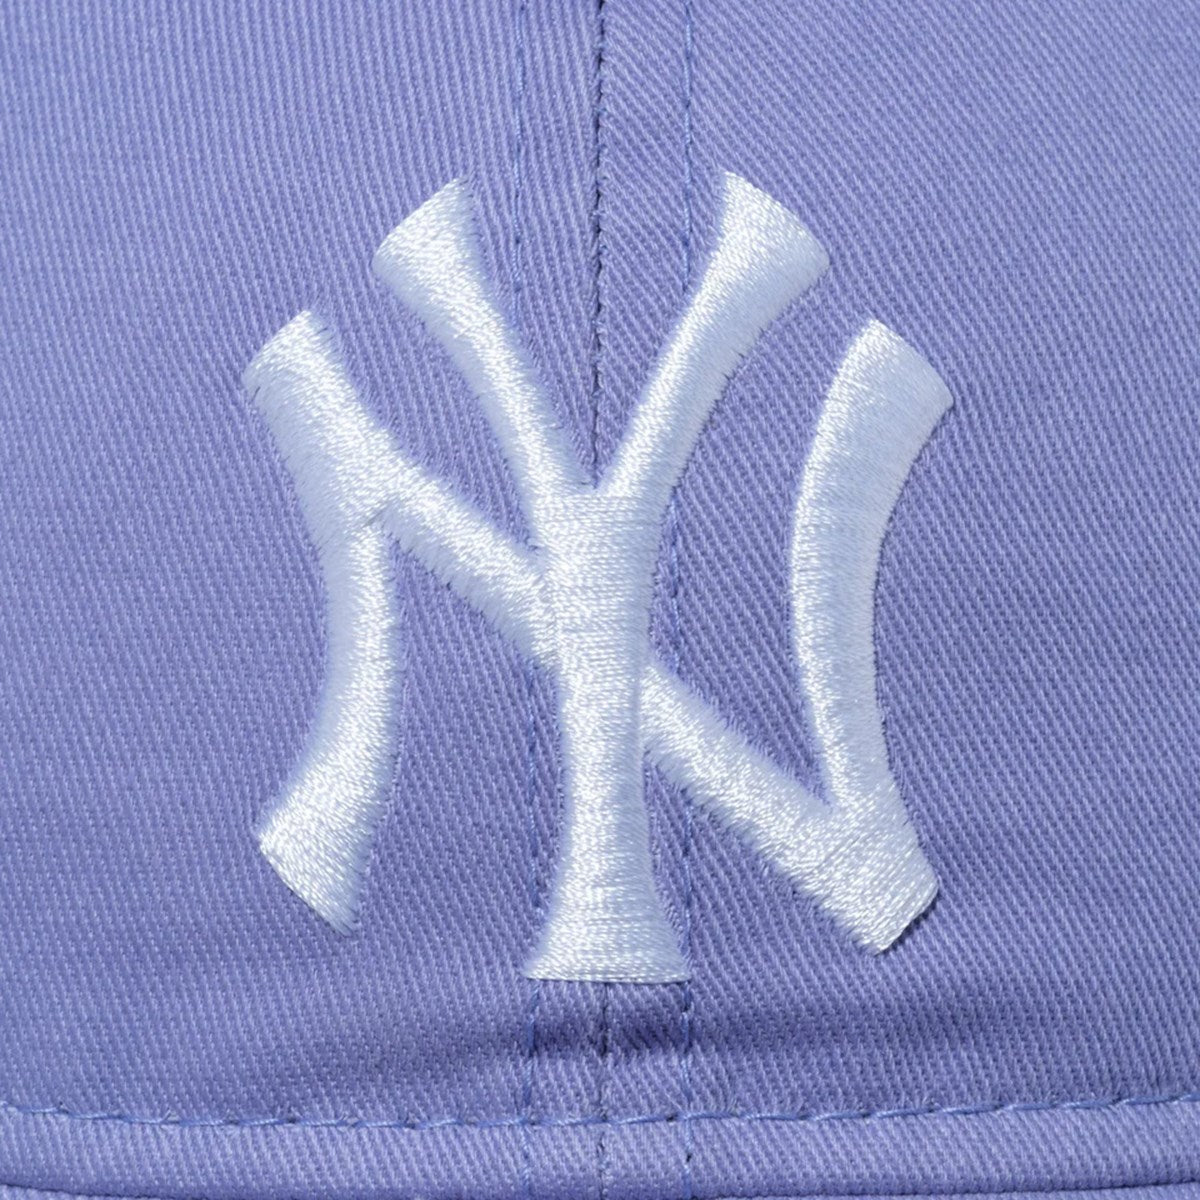 NEW ERA New York Yankees - 9TWENTY WASHED NEYYAN LAV WHI【60546696】